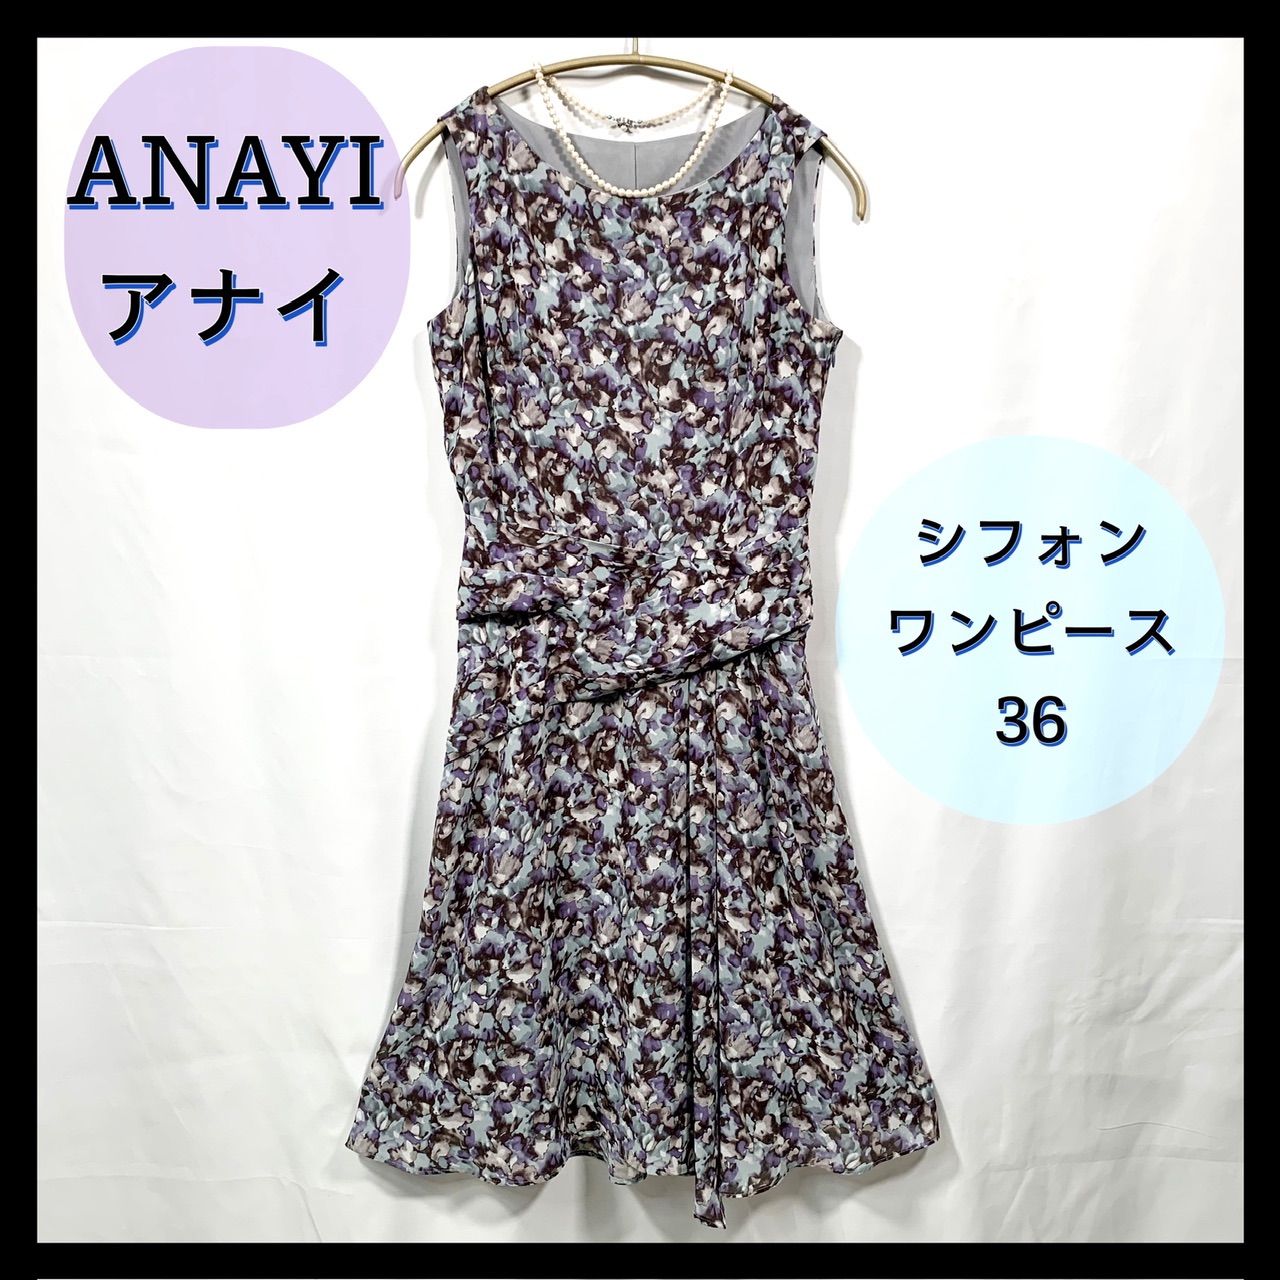 ⭐️美品⭐️【ANAYI】アナイ シフォン 柄 フレアワンピース 36